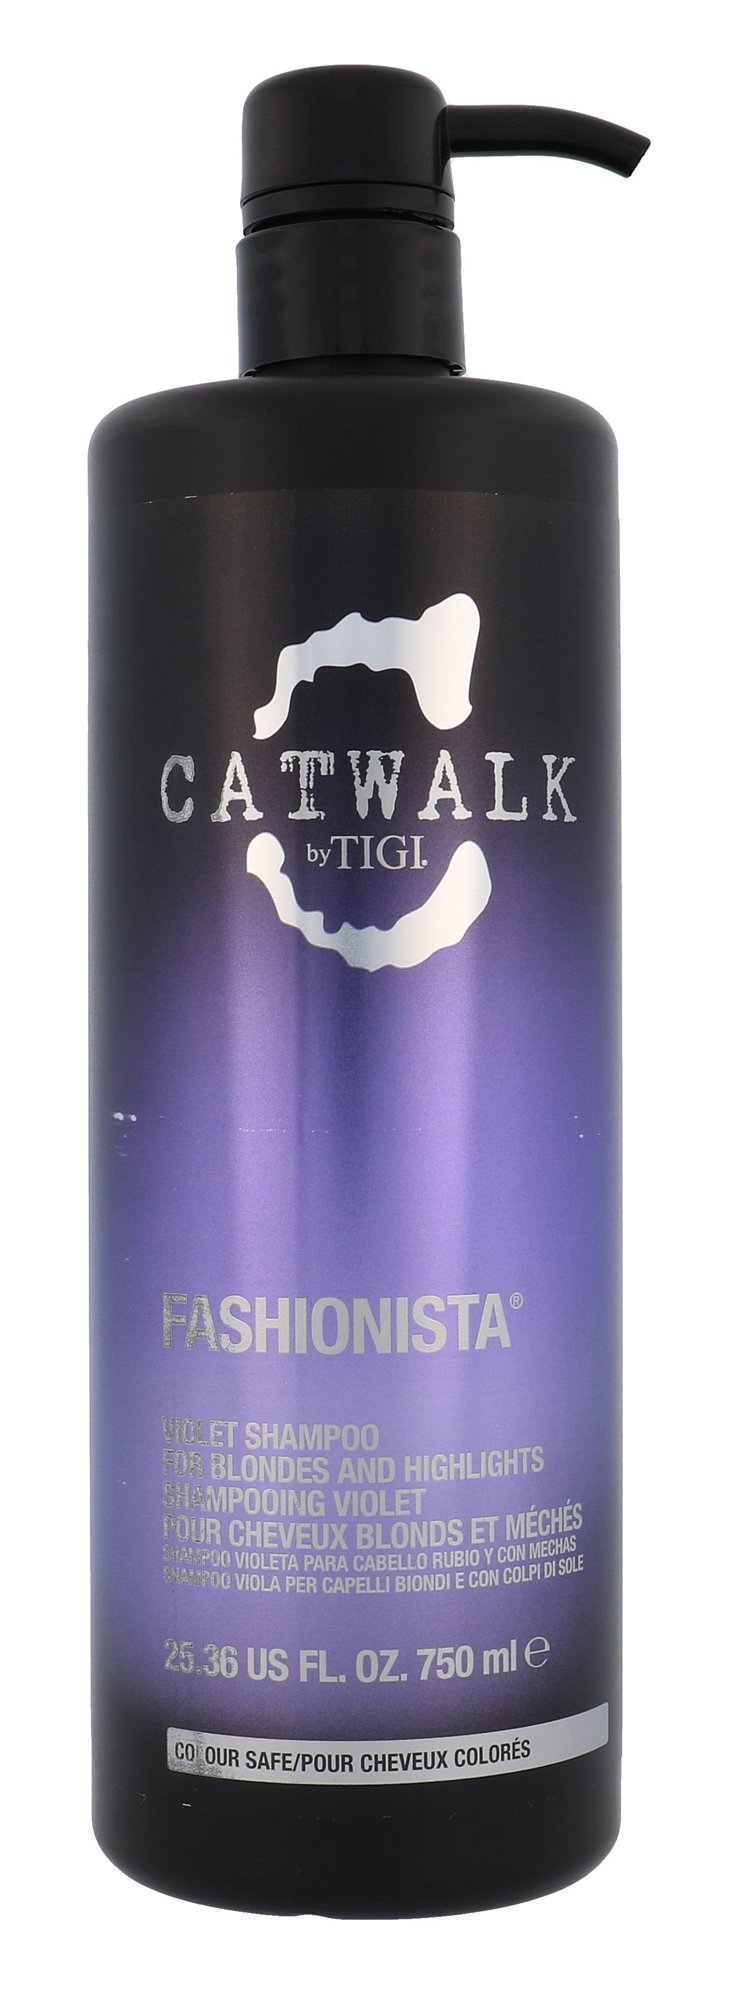 Tigi Catwalk Fashionista Violet šampūnas